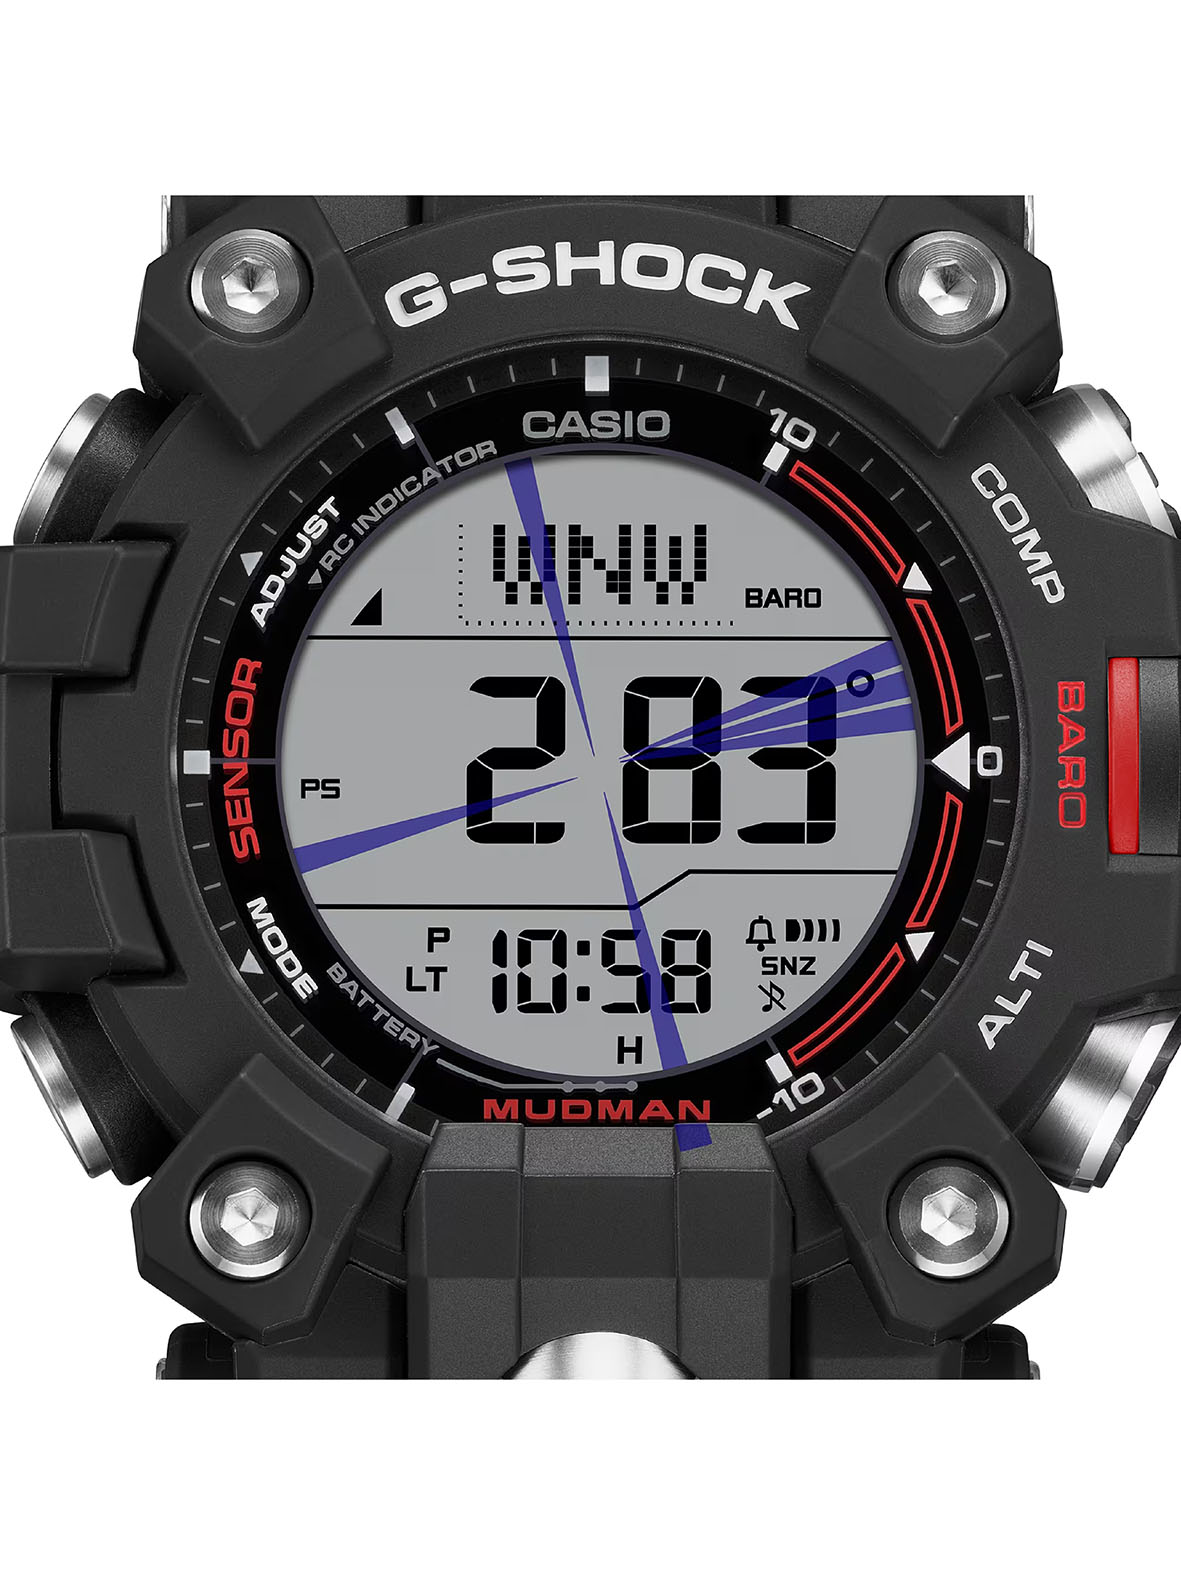 G-SHOCK MUDMAN GW-9500